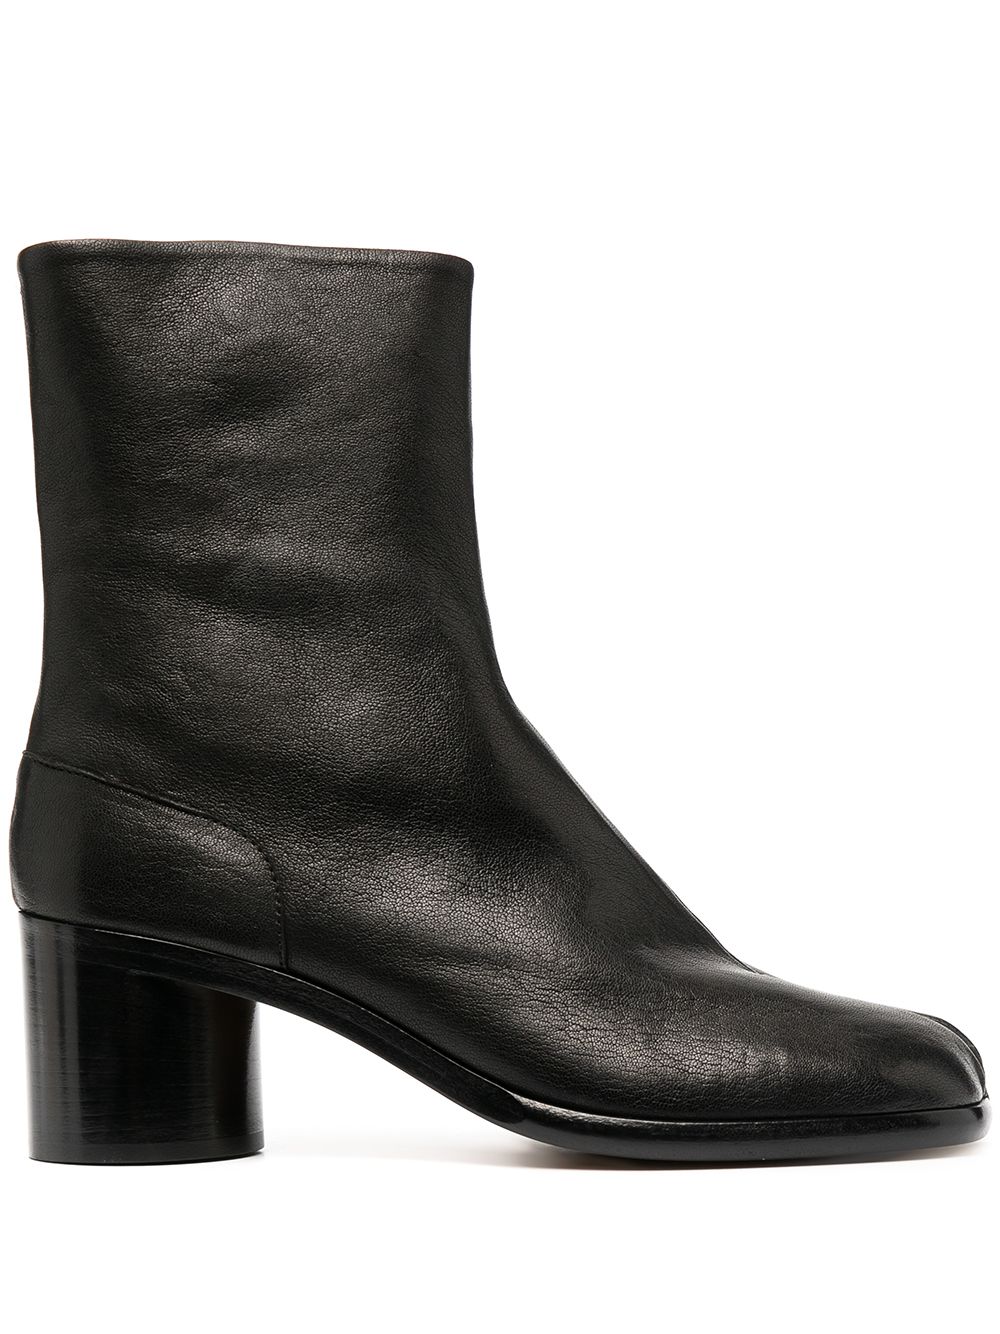 Tabi Leather Boots дамски обувки Maison Margiela 843788180_35_5